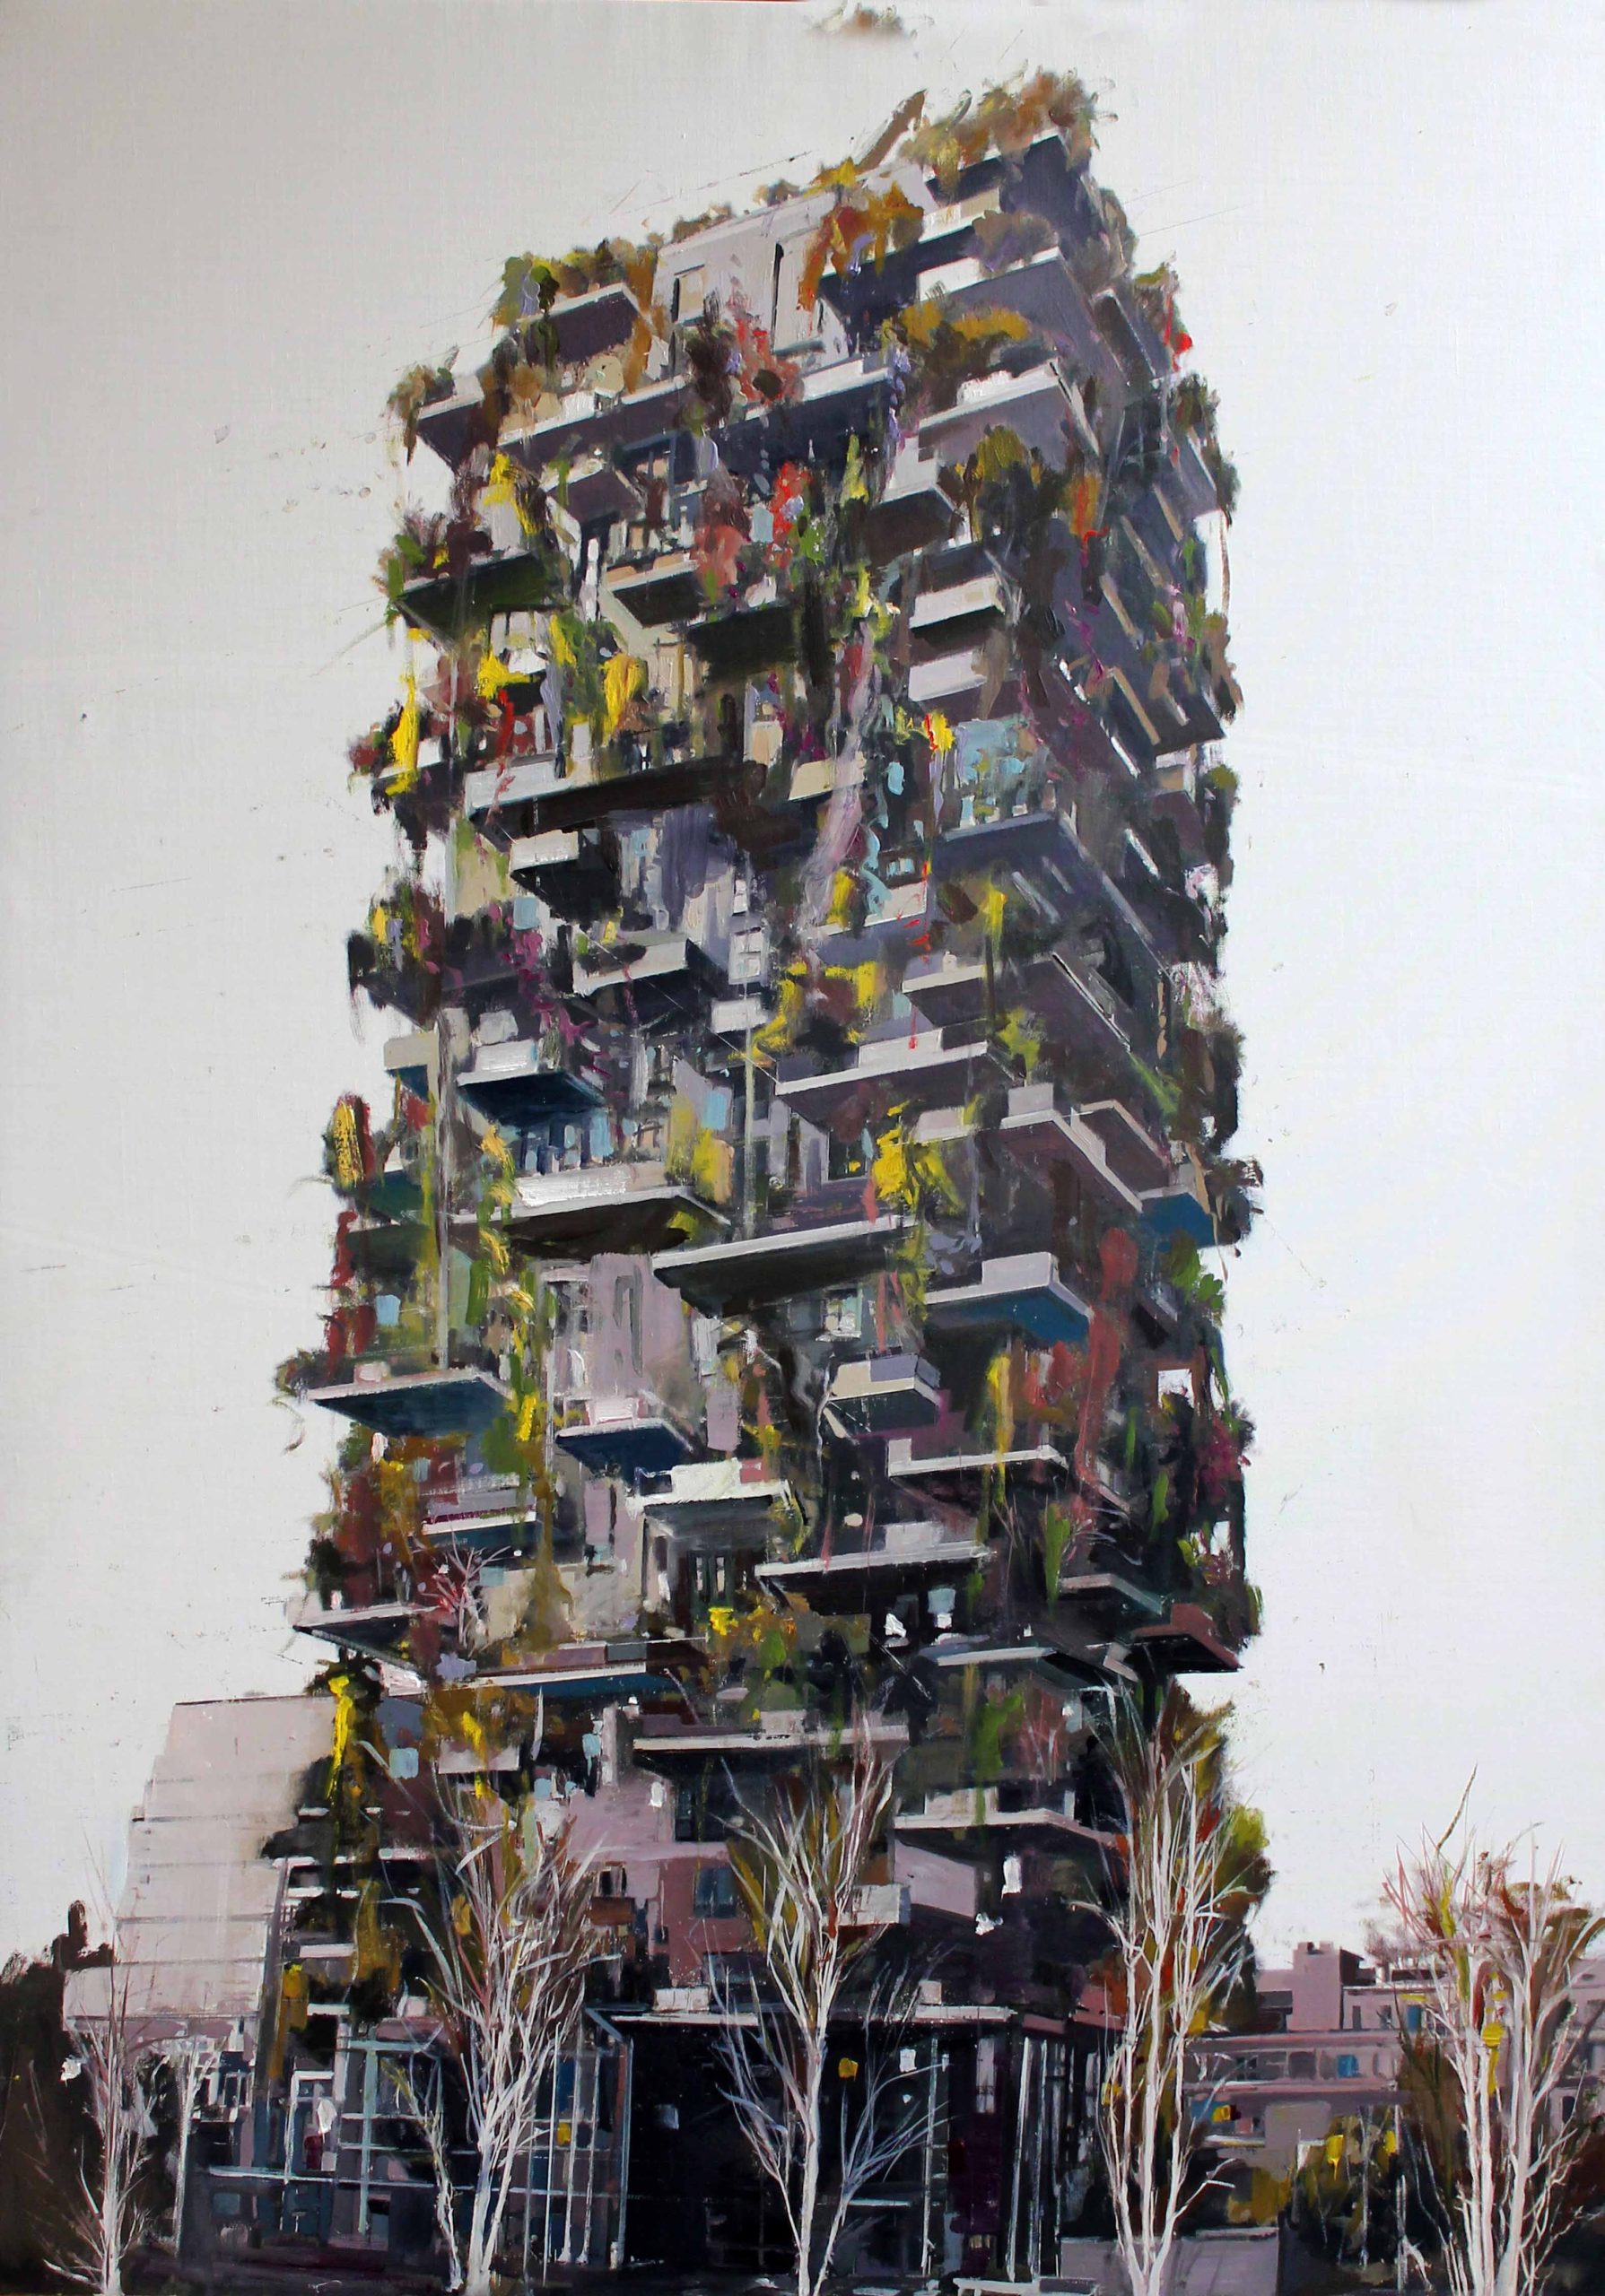 Milano verticale: una mostra della città che cresce nelle opere di Alessandro Russo